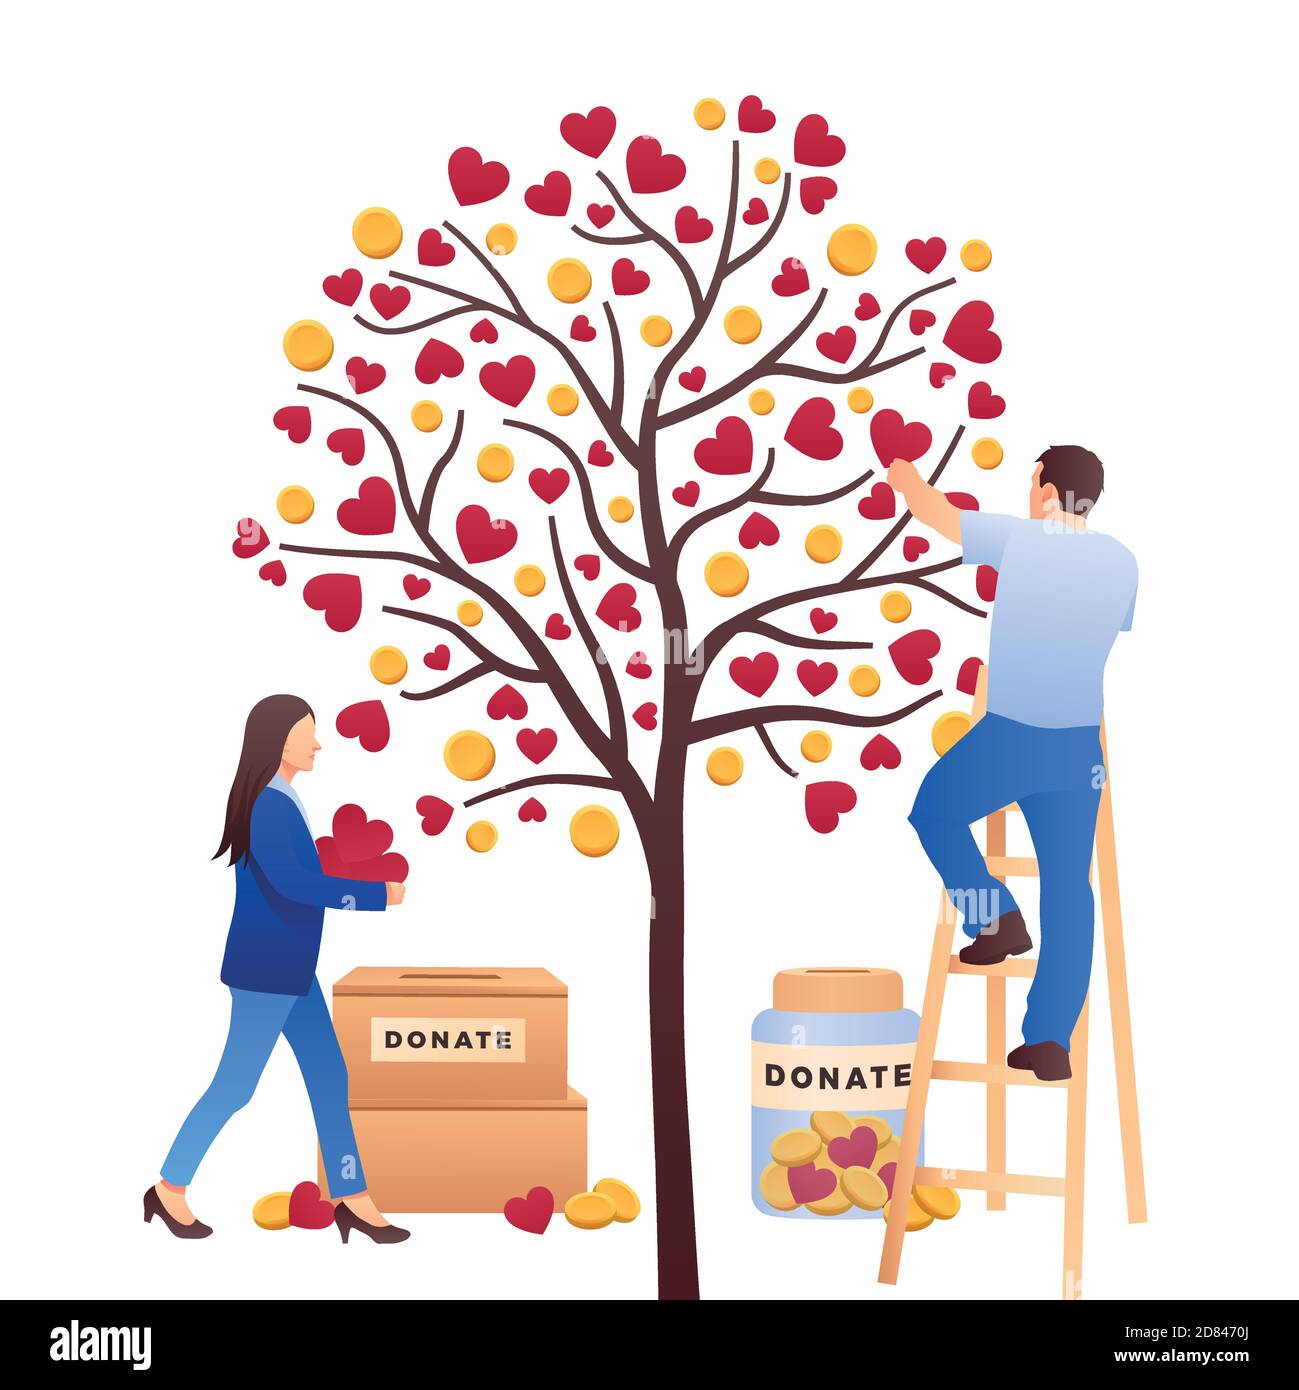 Charity Illustration mit Mann und Frau, die kümmern sich um Herzbaum. Wohltätigkeitsorganisation, Hilfe. Spenden, Geld geben. Vektorgrafik, flache Ausführung Stock Vektor